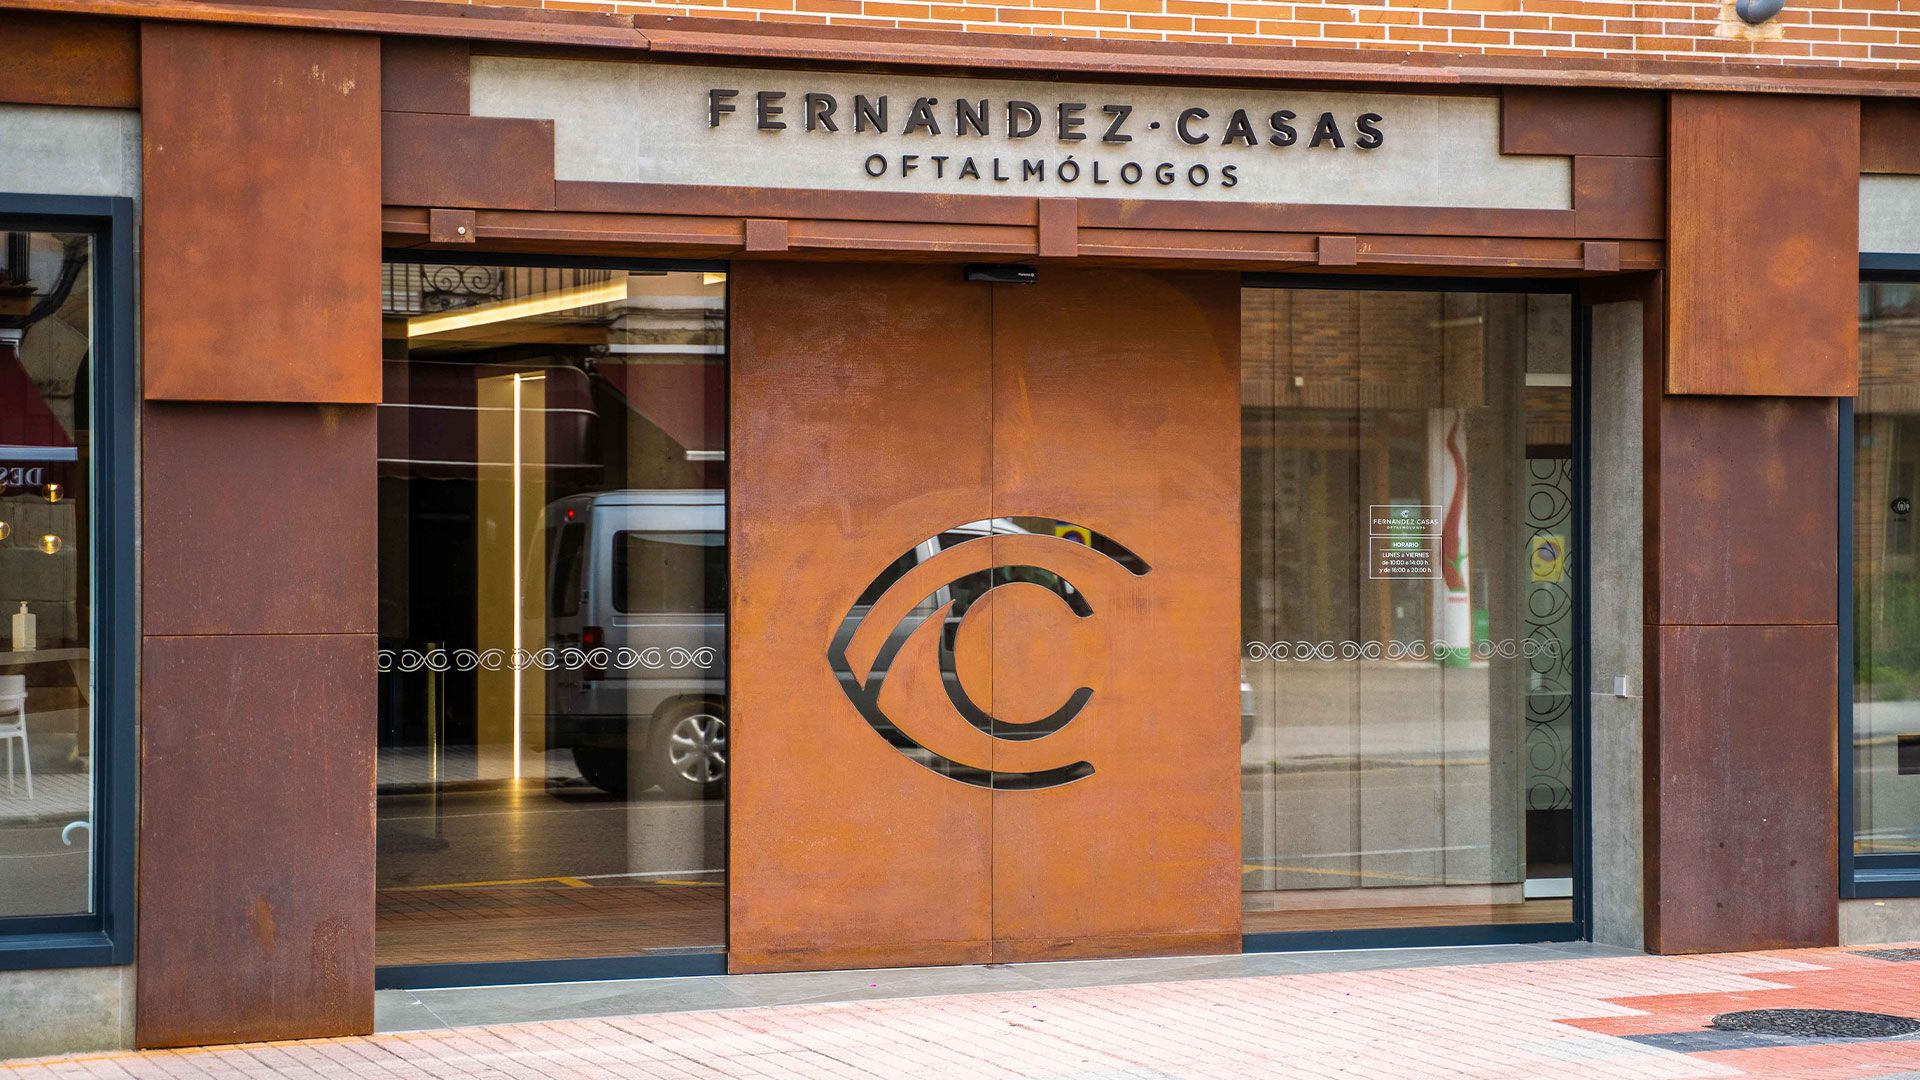 Clínica de oftalmología de los doctores Frnández-Casas